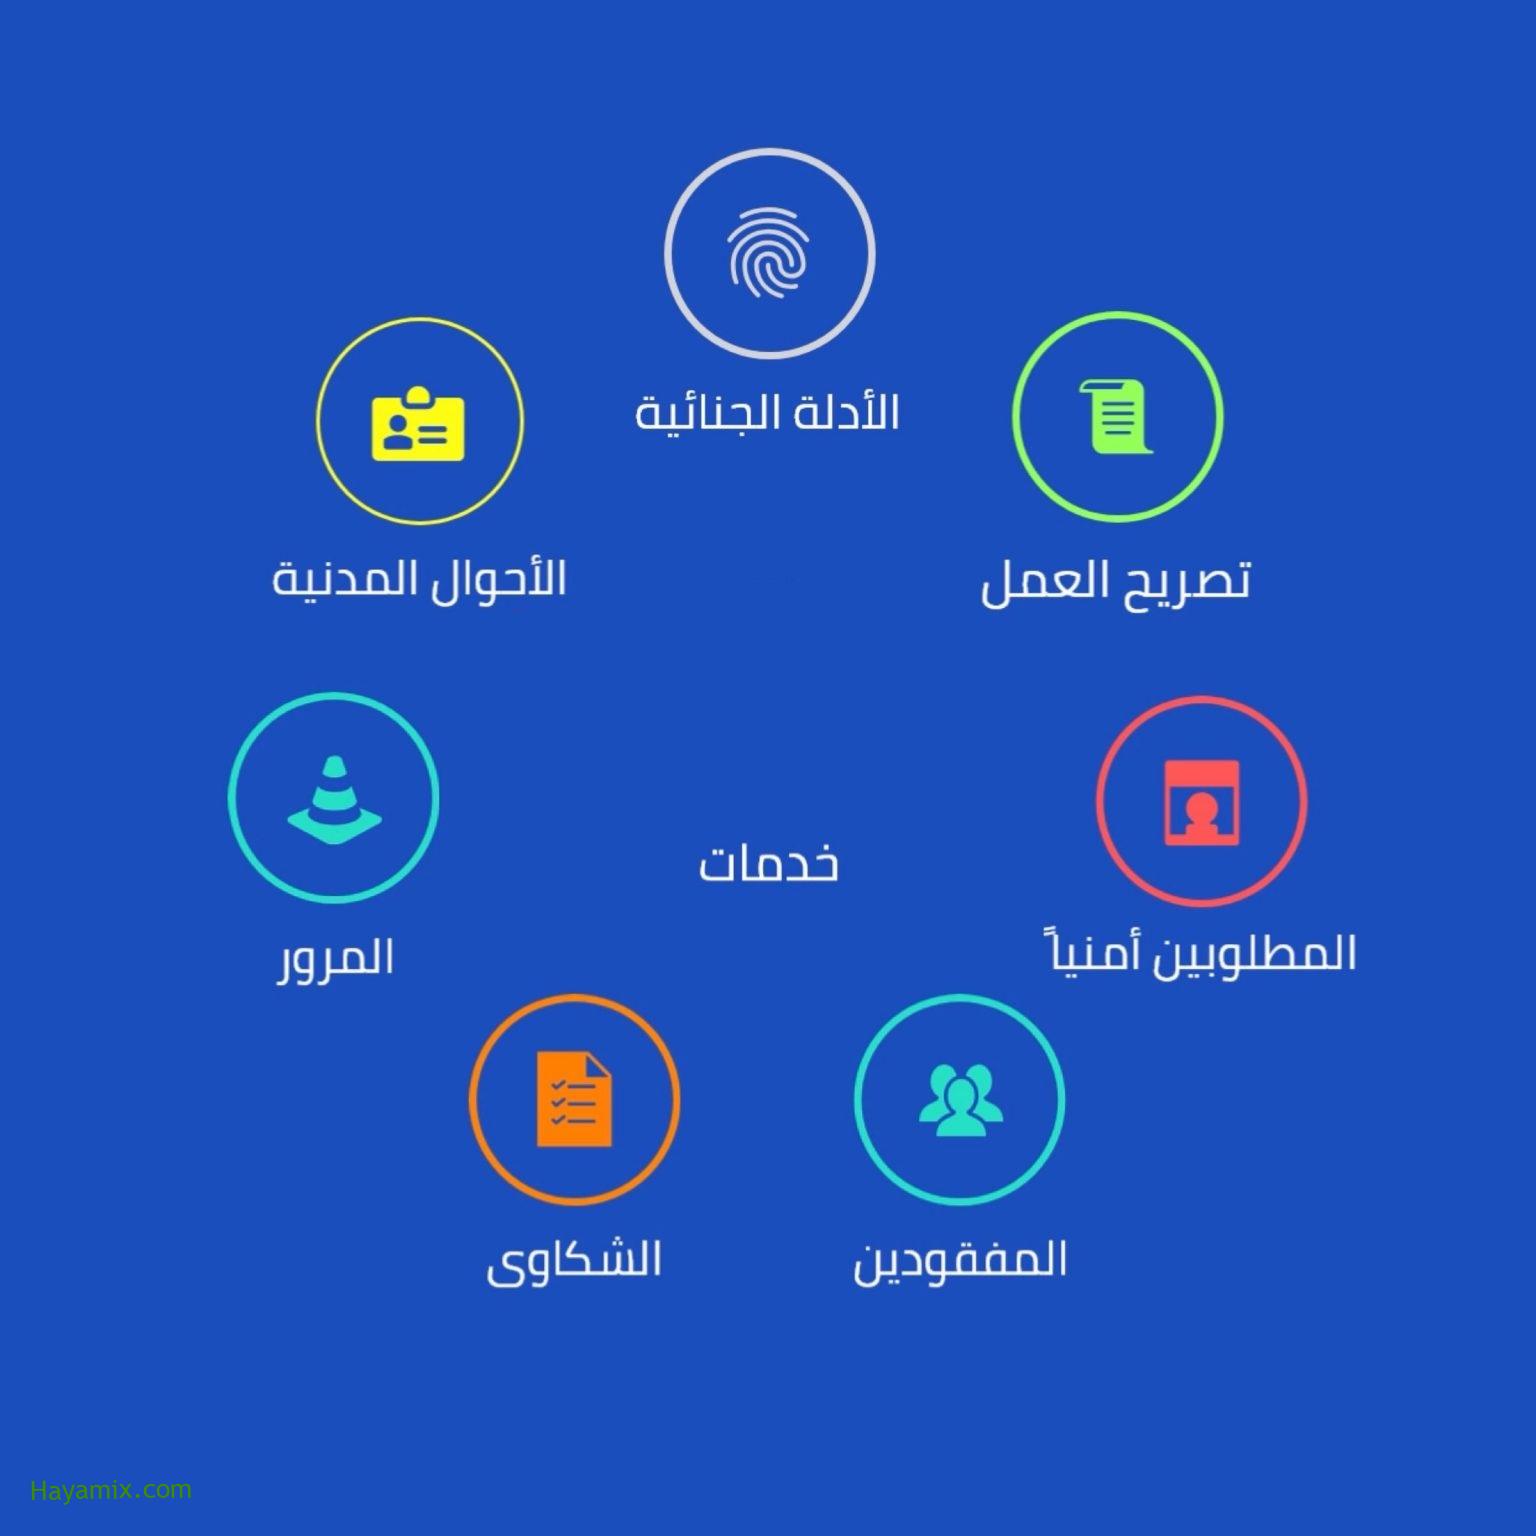 طريقة الاستعلام عن المخالفات المرورية 2021 أونلاين باستخدام تطبيق وزارة الداخلية المصرية